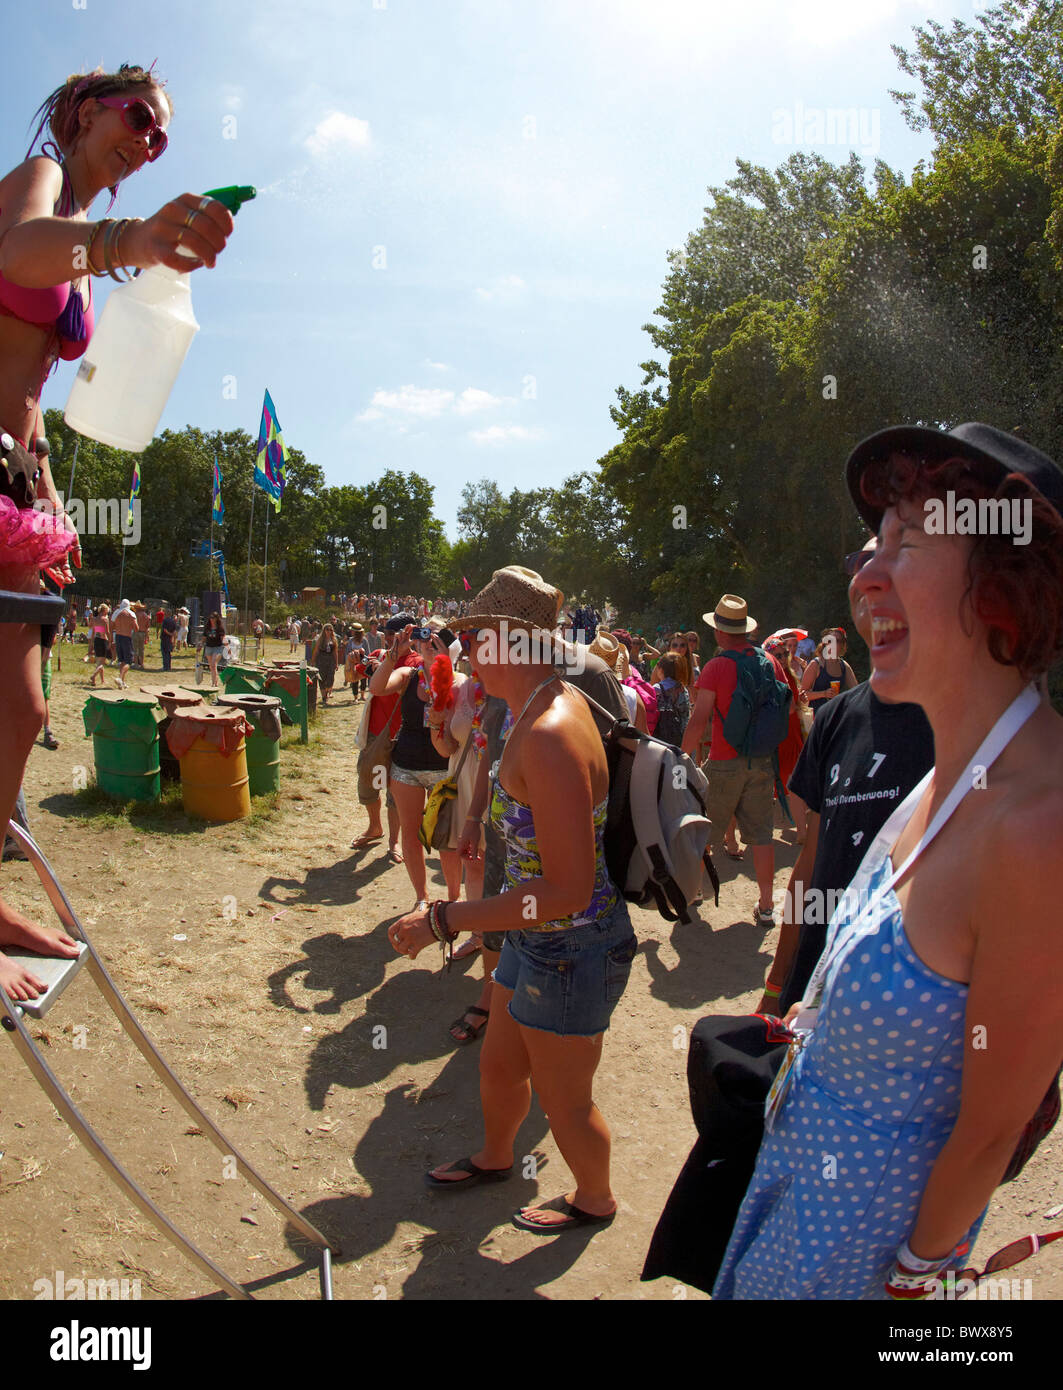 Stiltwalker asportazione delle ovaie i frequentatori del festival con acqua festival di Glastonbury Somerset REGNO UNITO Europa Foto Stock